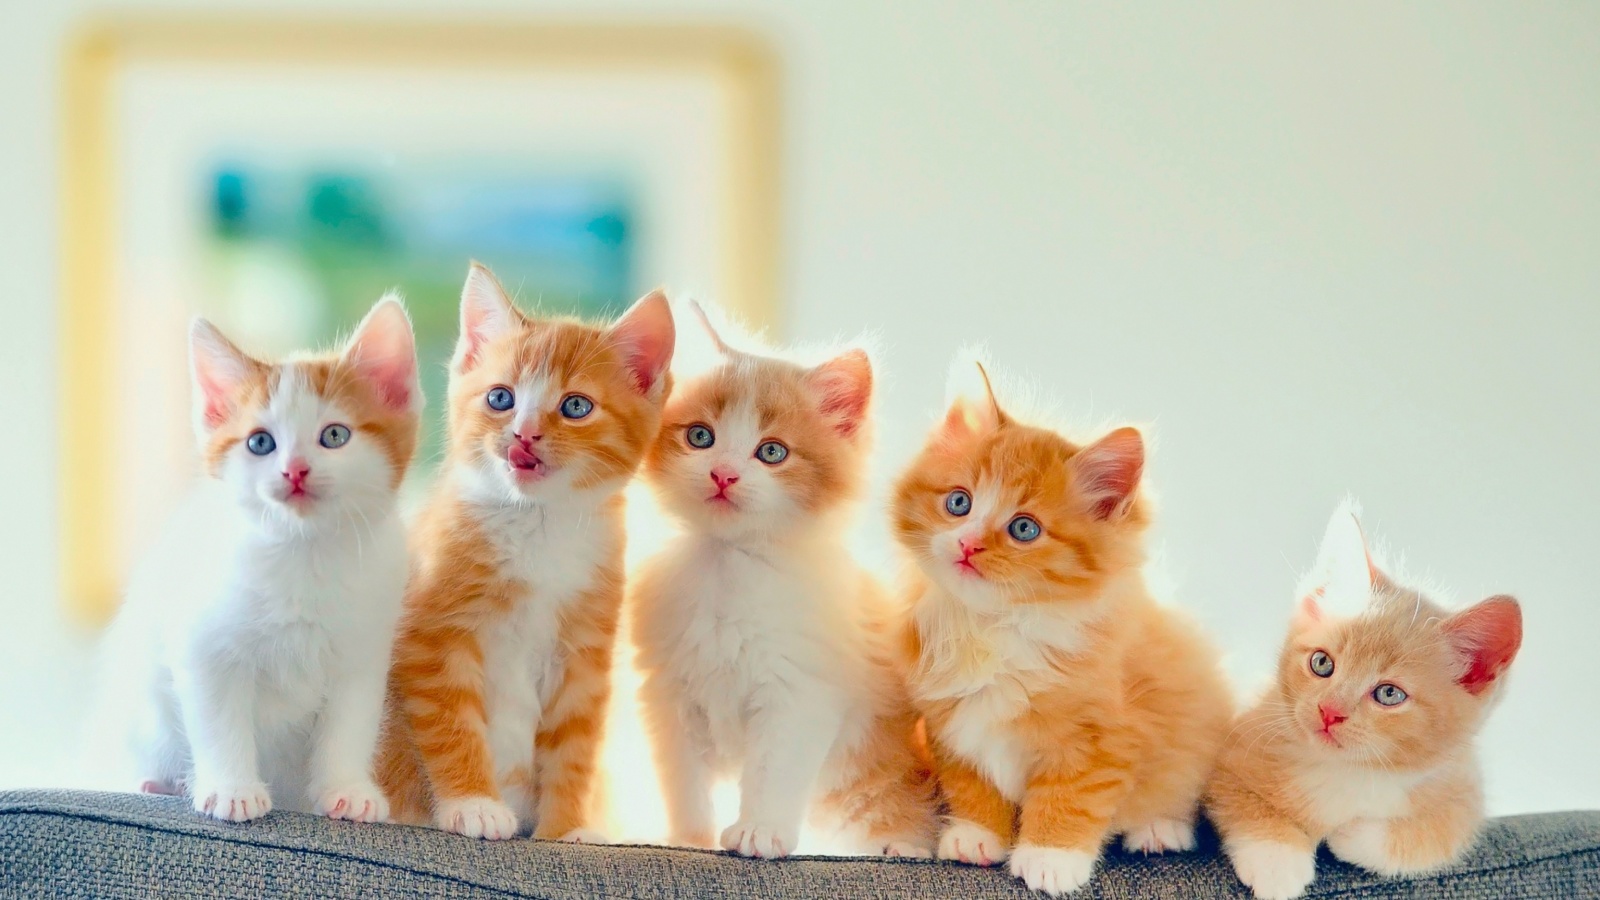 Обои Cute Kittens 1600x900